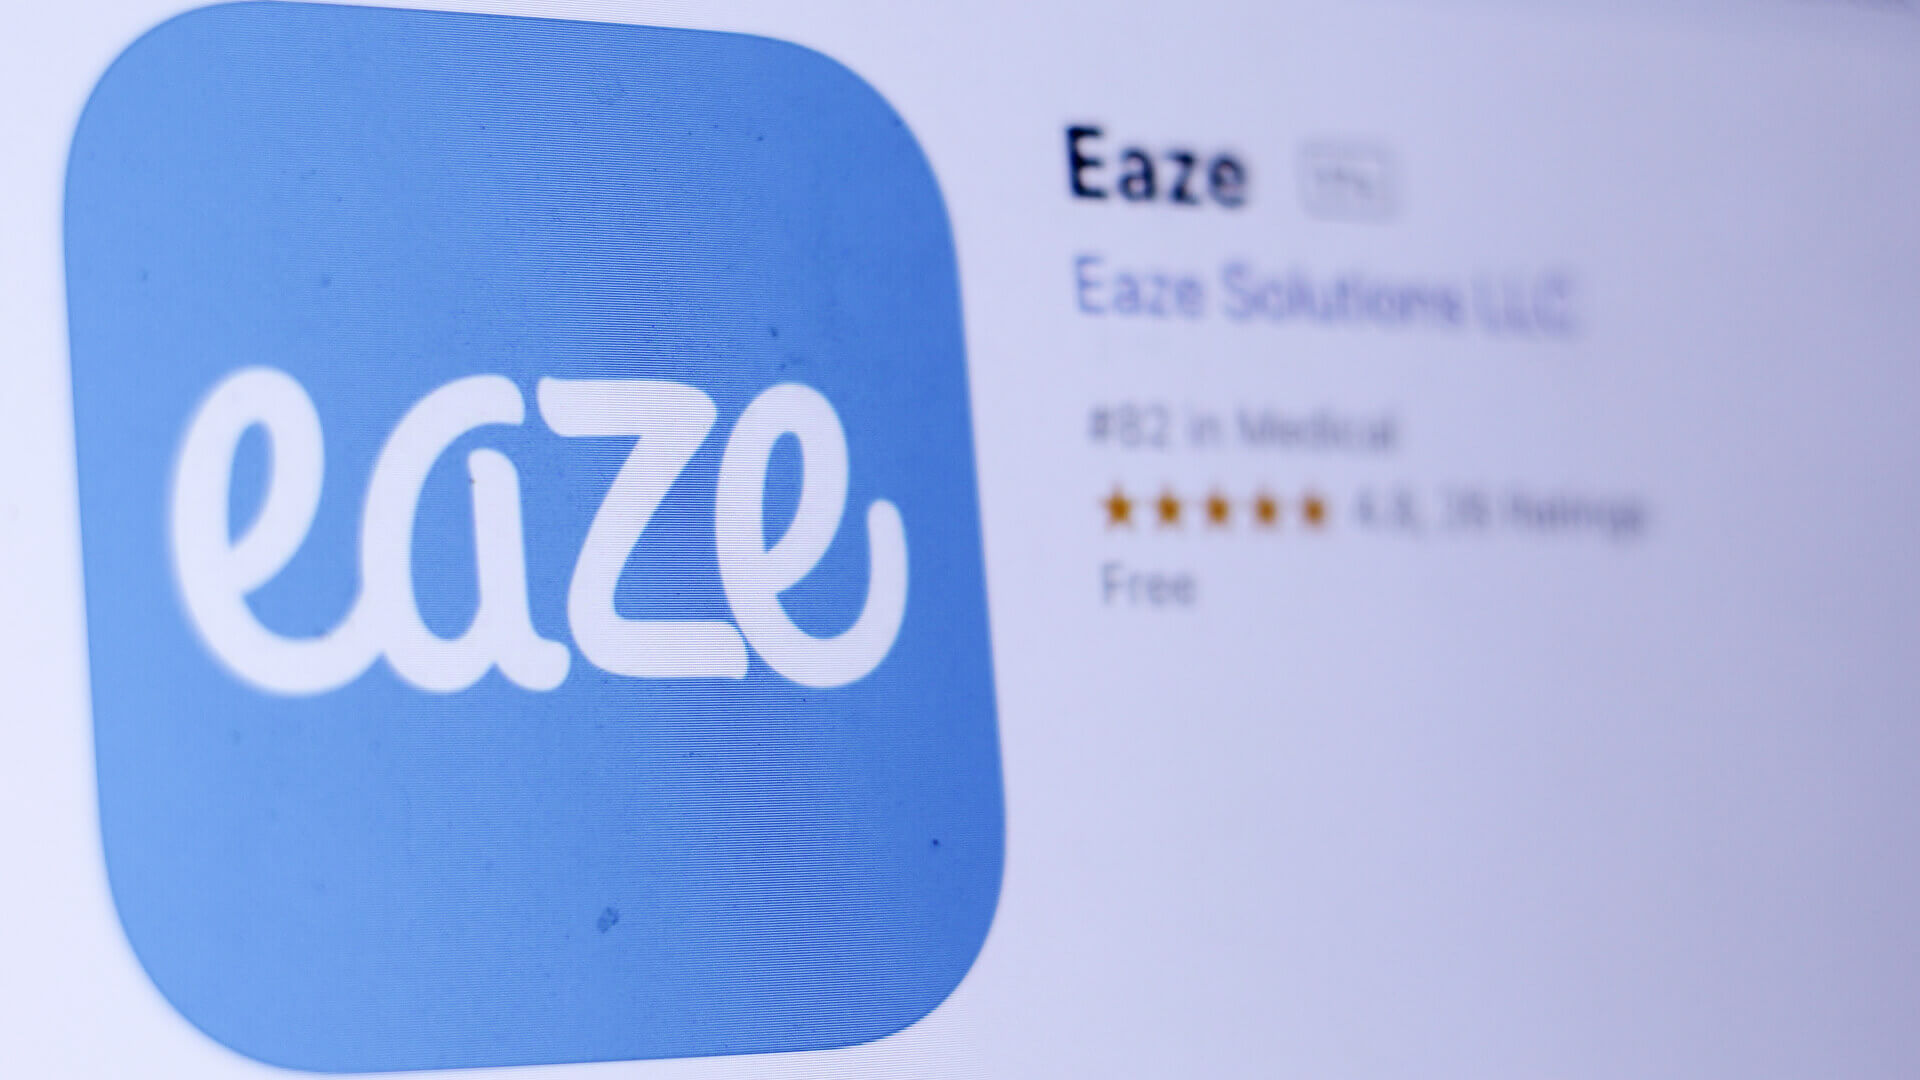 Eaze app store listing